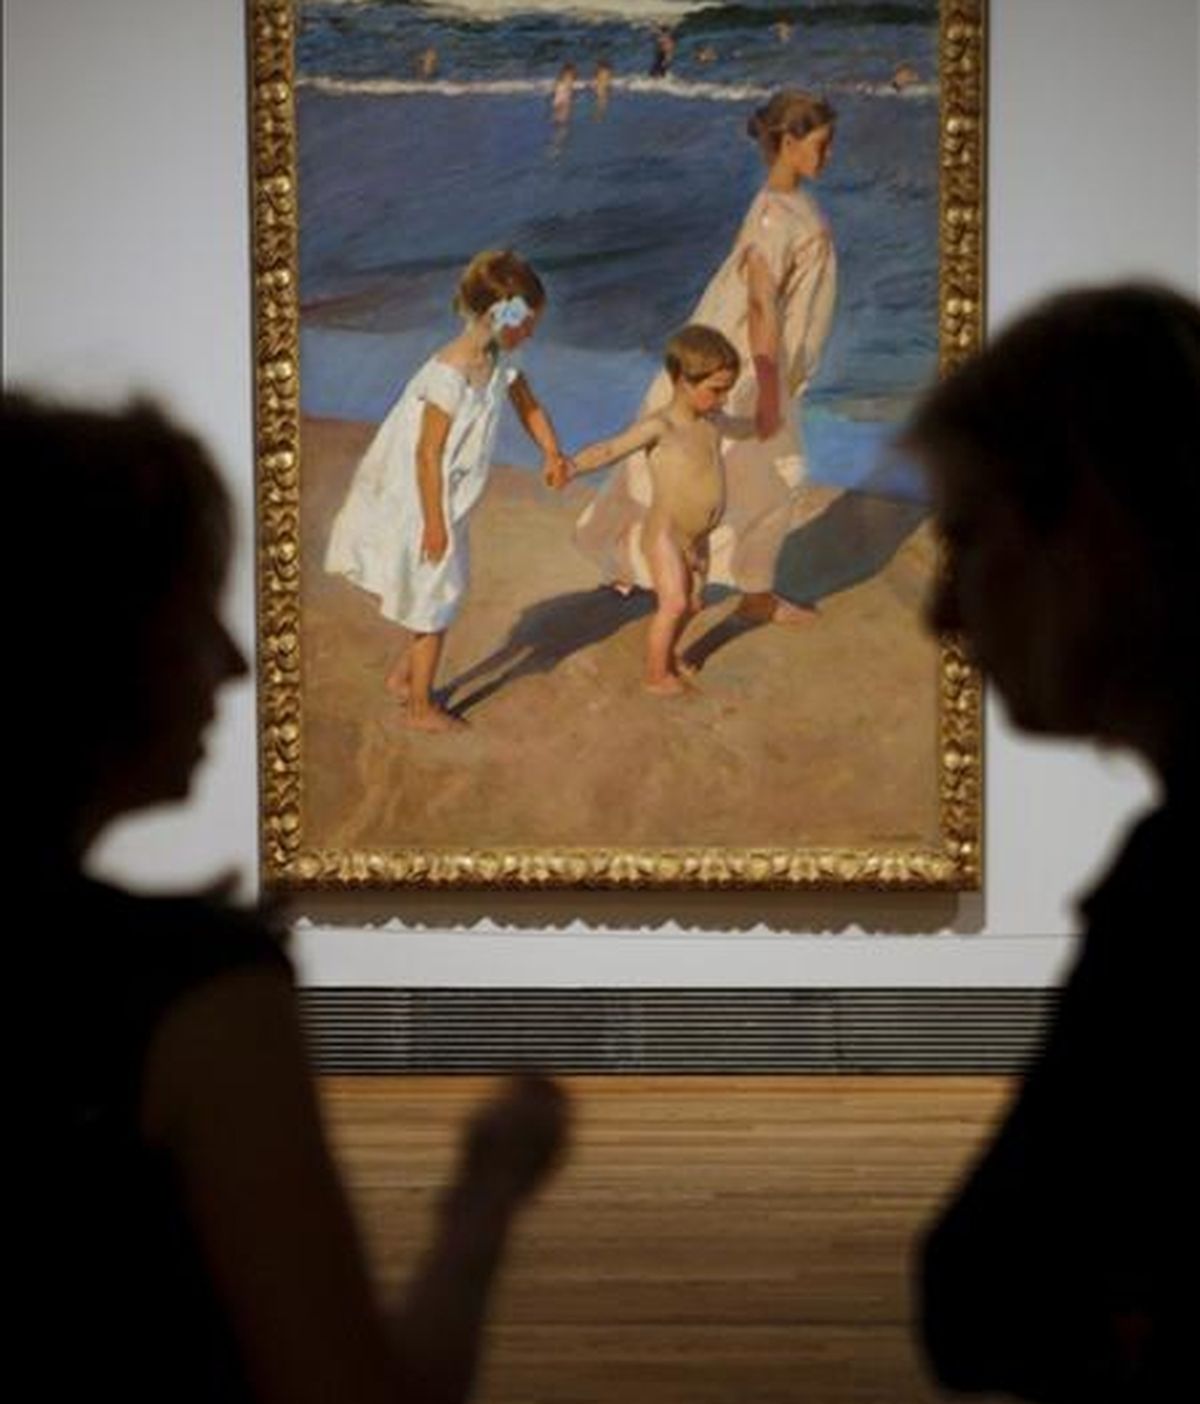 Dos mujeres charlan delante del cuadro de Joaquín Sorolla "Al baño", obra incluida en la mayor exposición antológica dedicada hasta la fecha al pintor, del que el Museo del Prado. EFE/Archivo